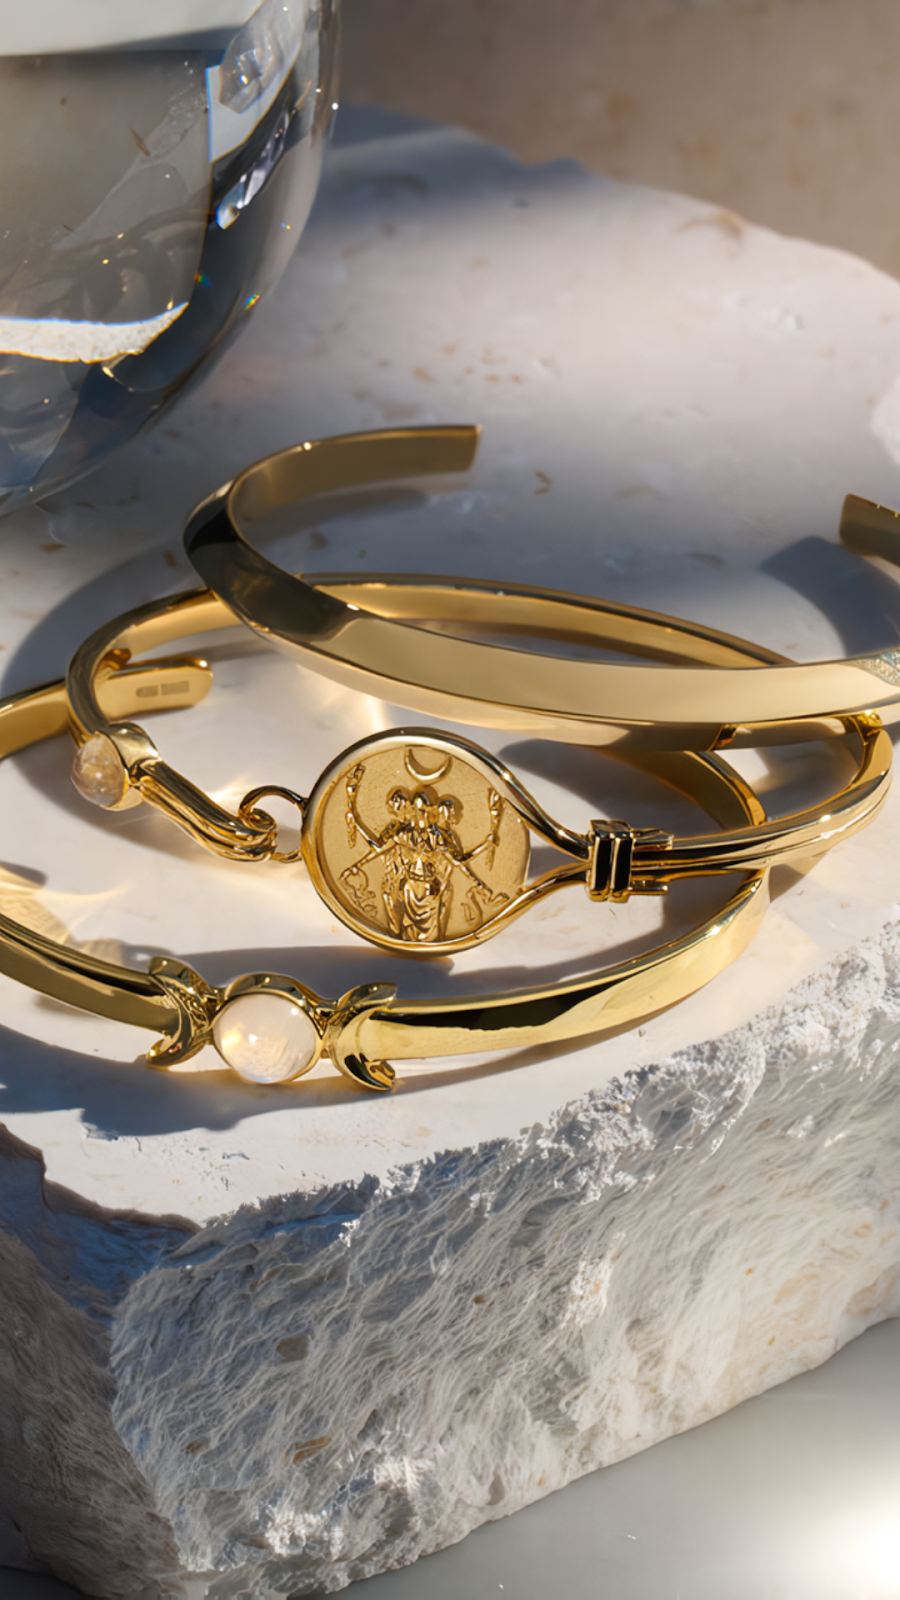 Gold Bracelets For Women